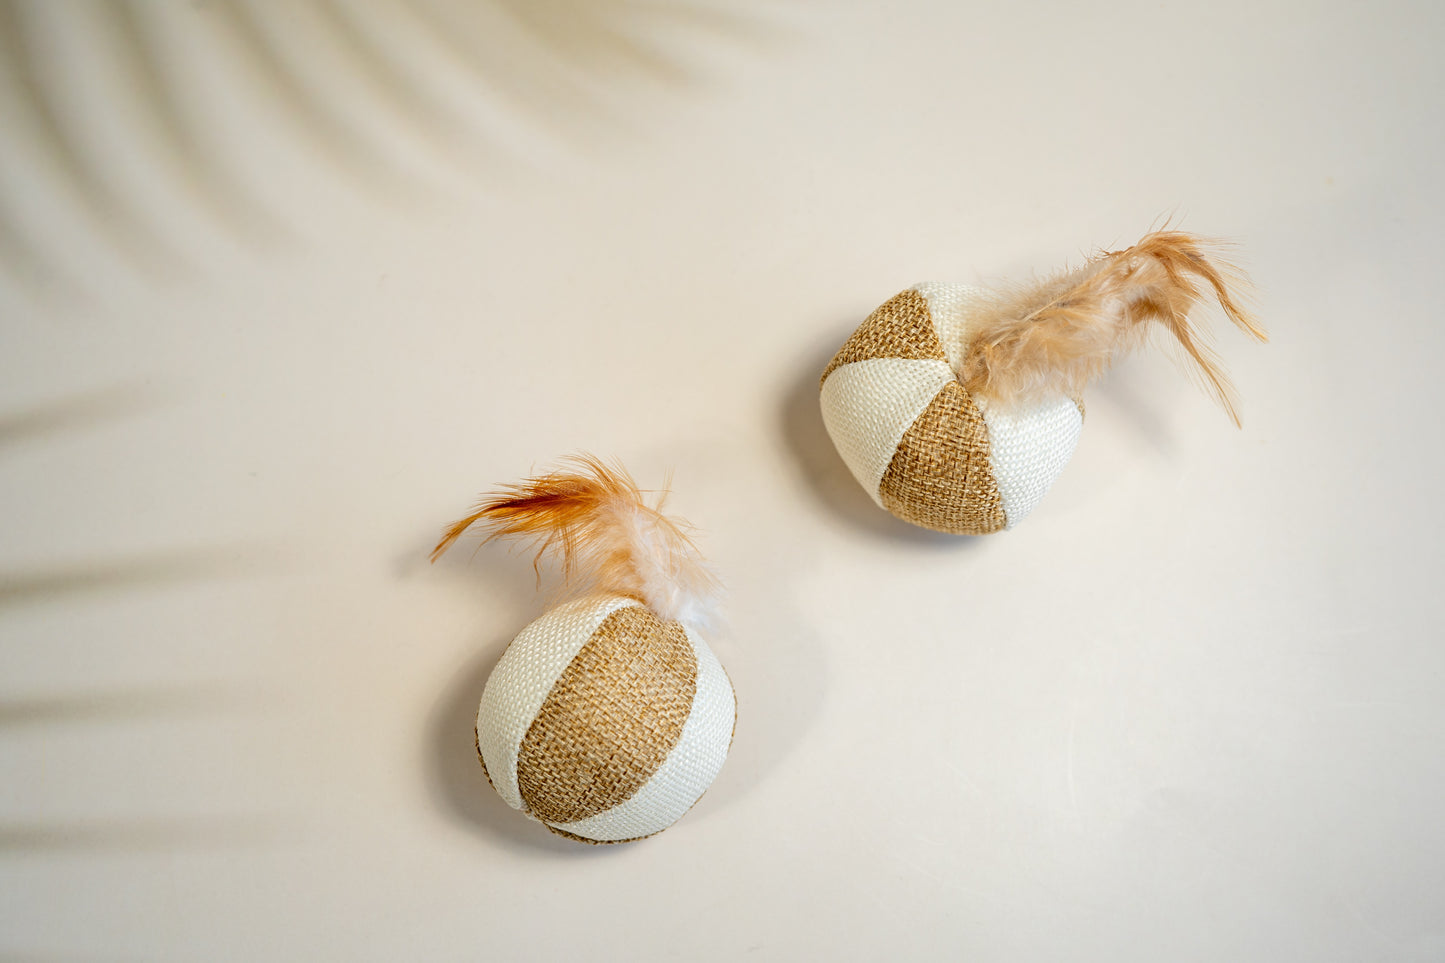 Balles pour chat en tissus mou d'aspect naturel avec plumes sur le dessus et aux couleurs neutres.